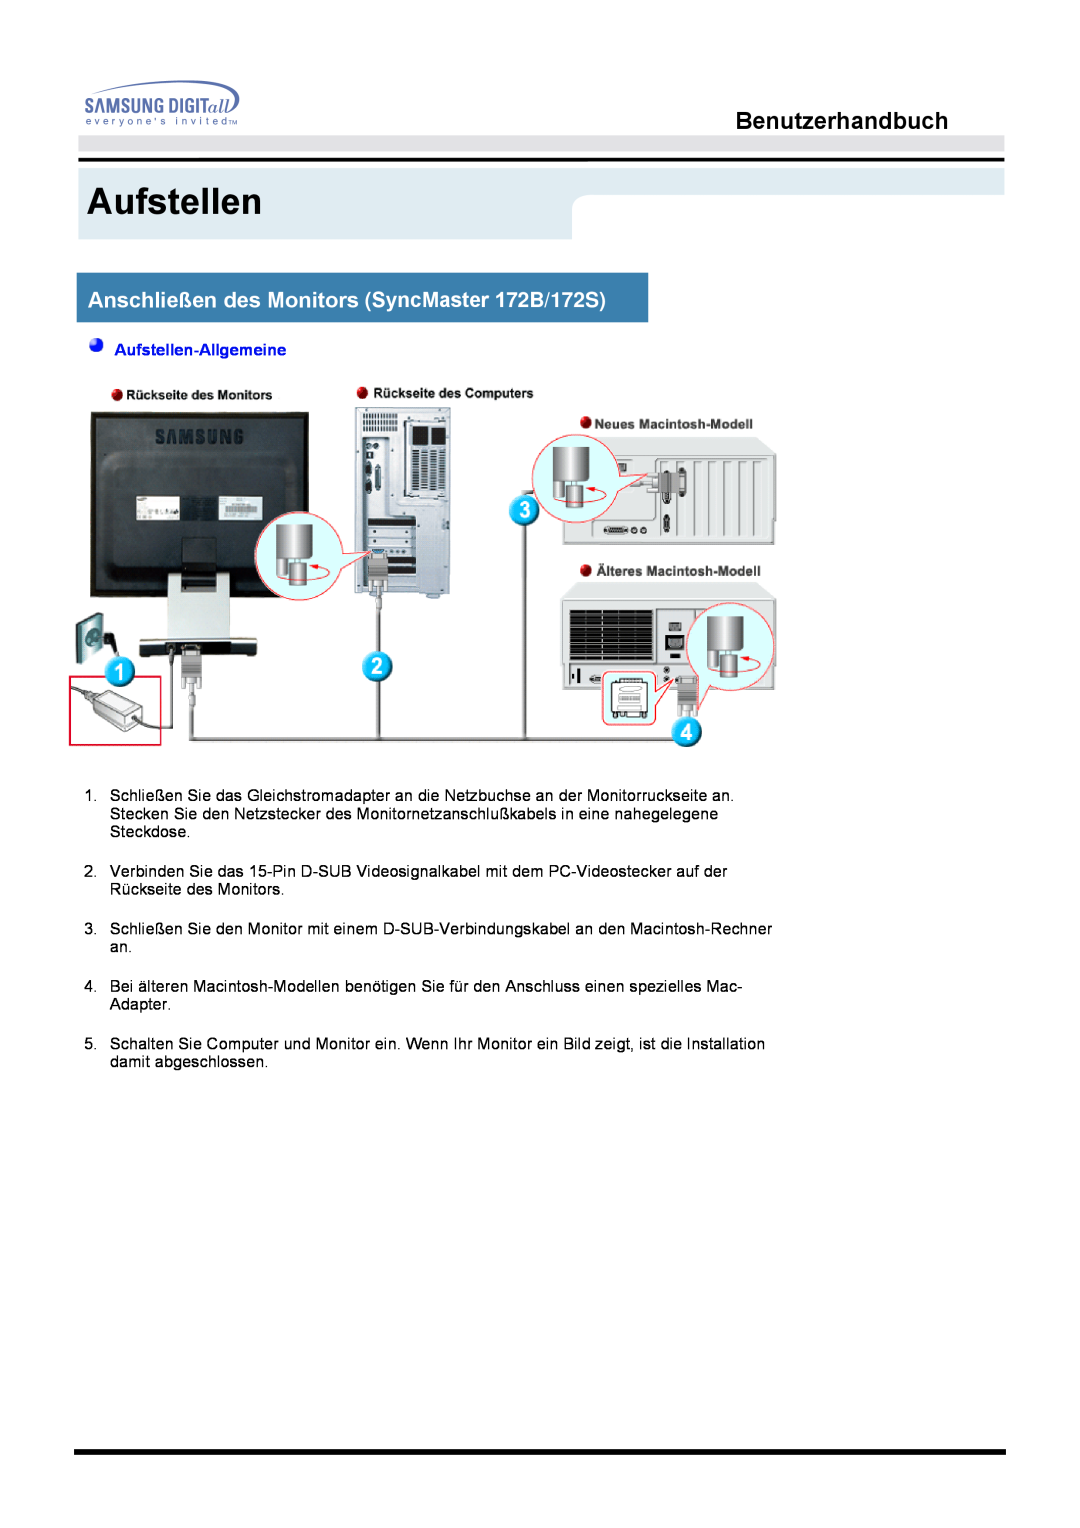 Samsung MO17ESDSZ/EDC manual Anschließen des Monitors SyncMaster 172B/172S, Benutzerhandbuch, Aufstellen-Allgemeine 